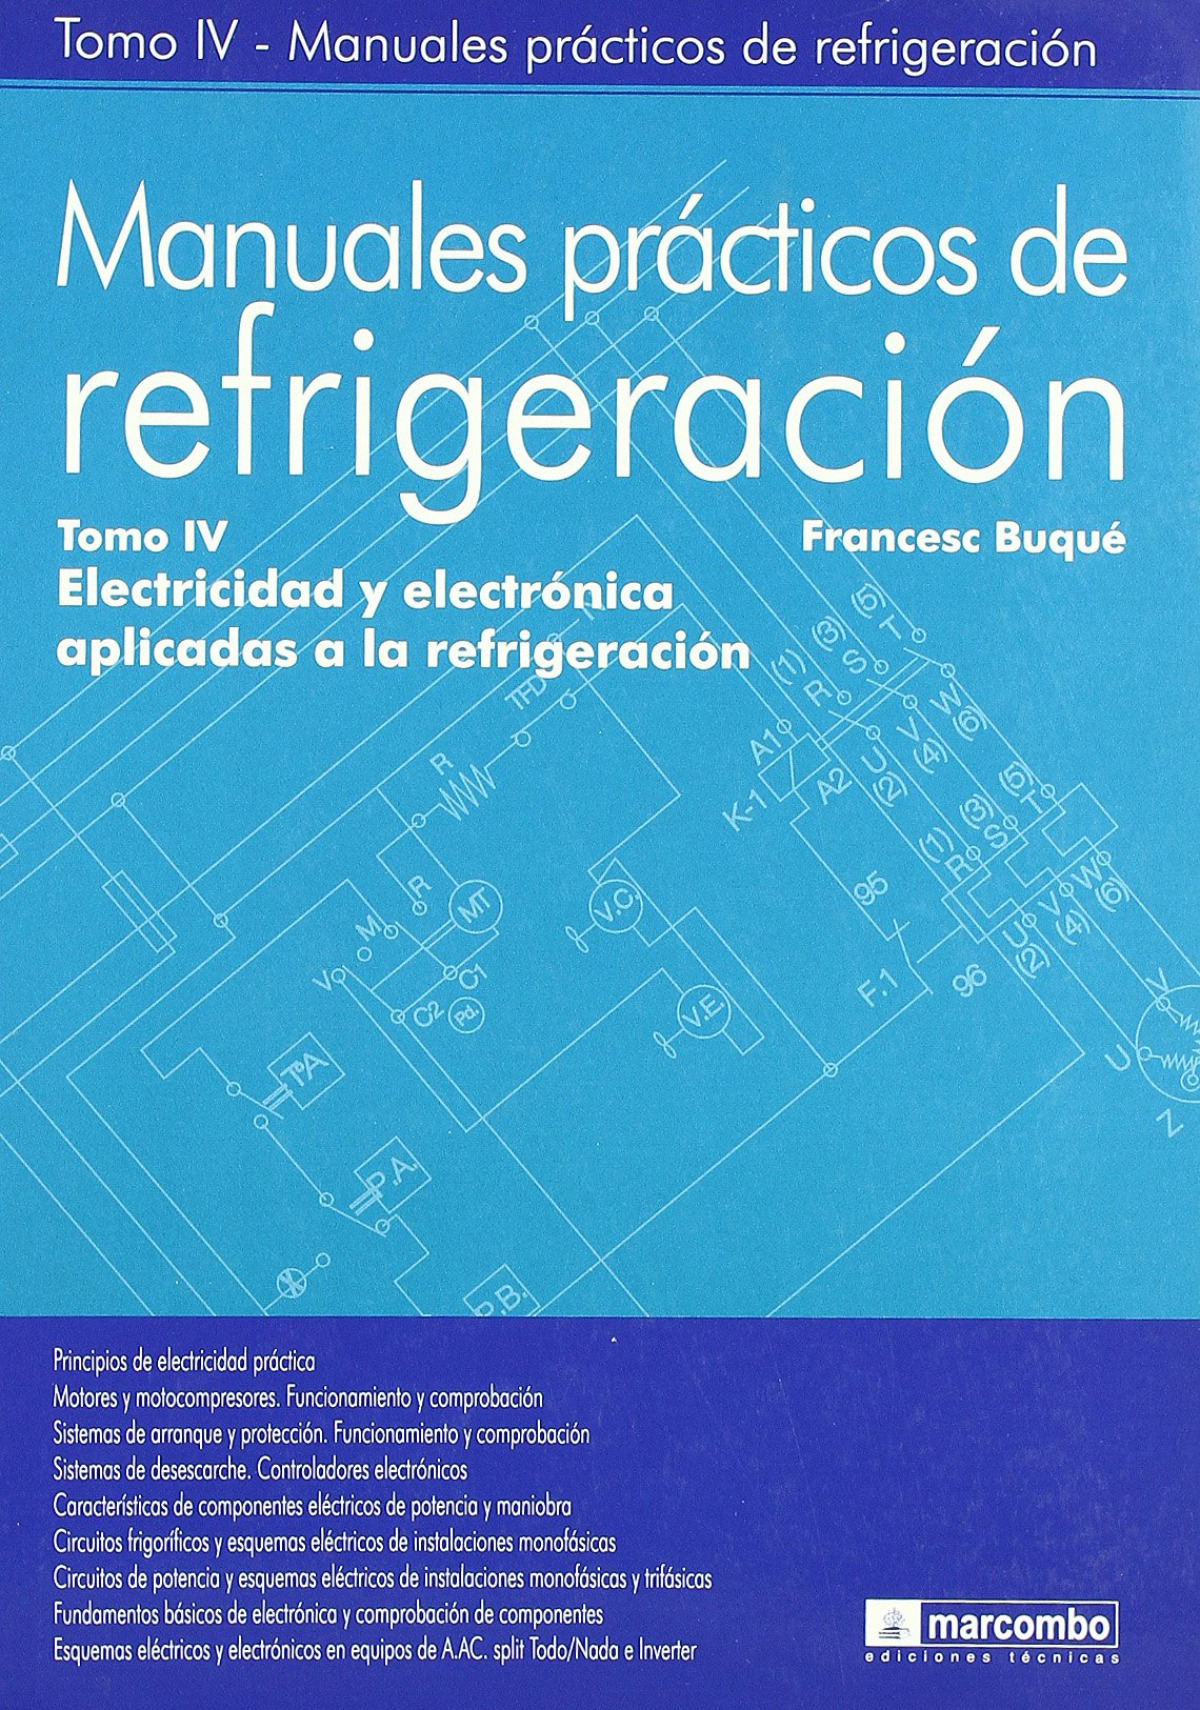 Manuales prácticos de refrigeración.tomo IV Electricidad y electrónica - Buqué, Francesc